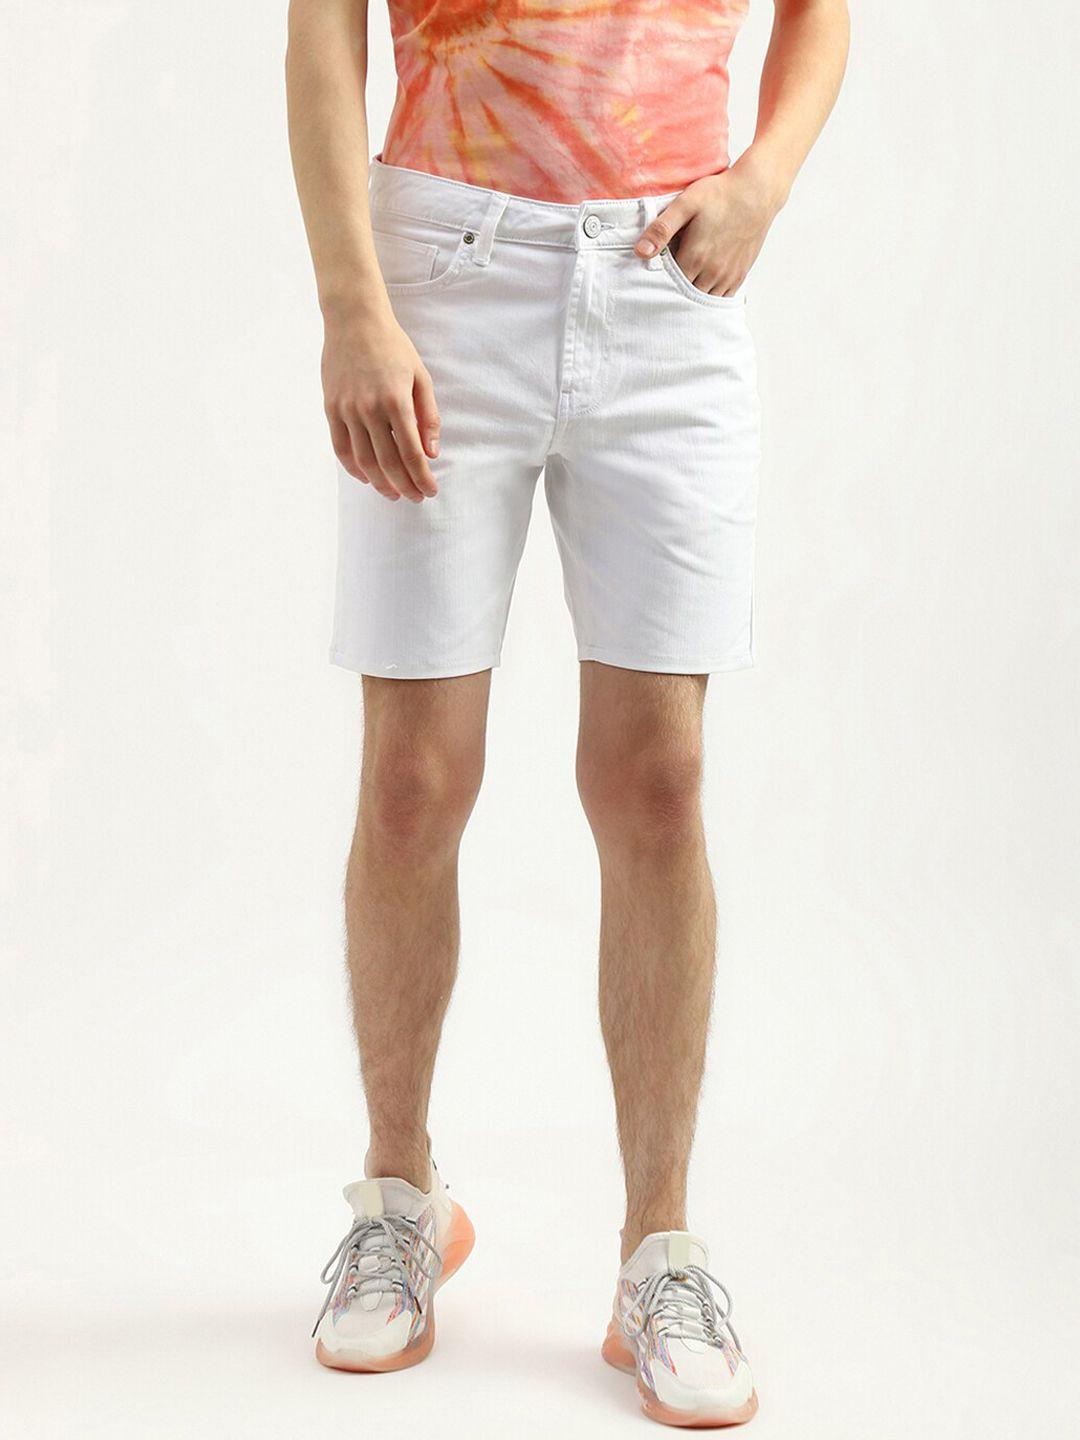 united-colors-of-benetton-men-slim-fit-cotton-denim-shorts